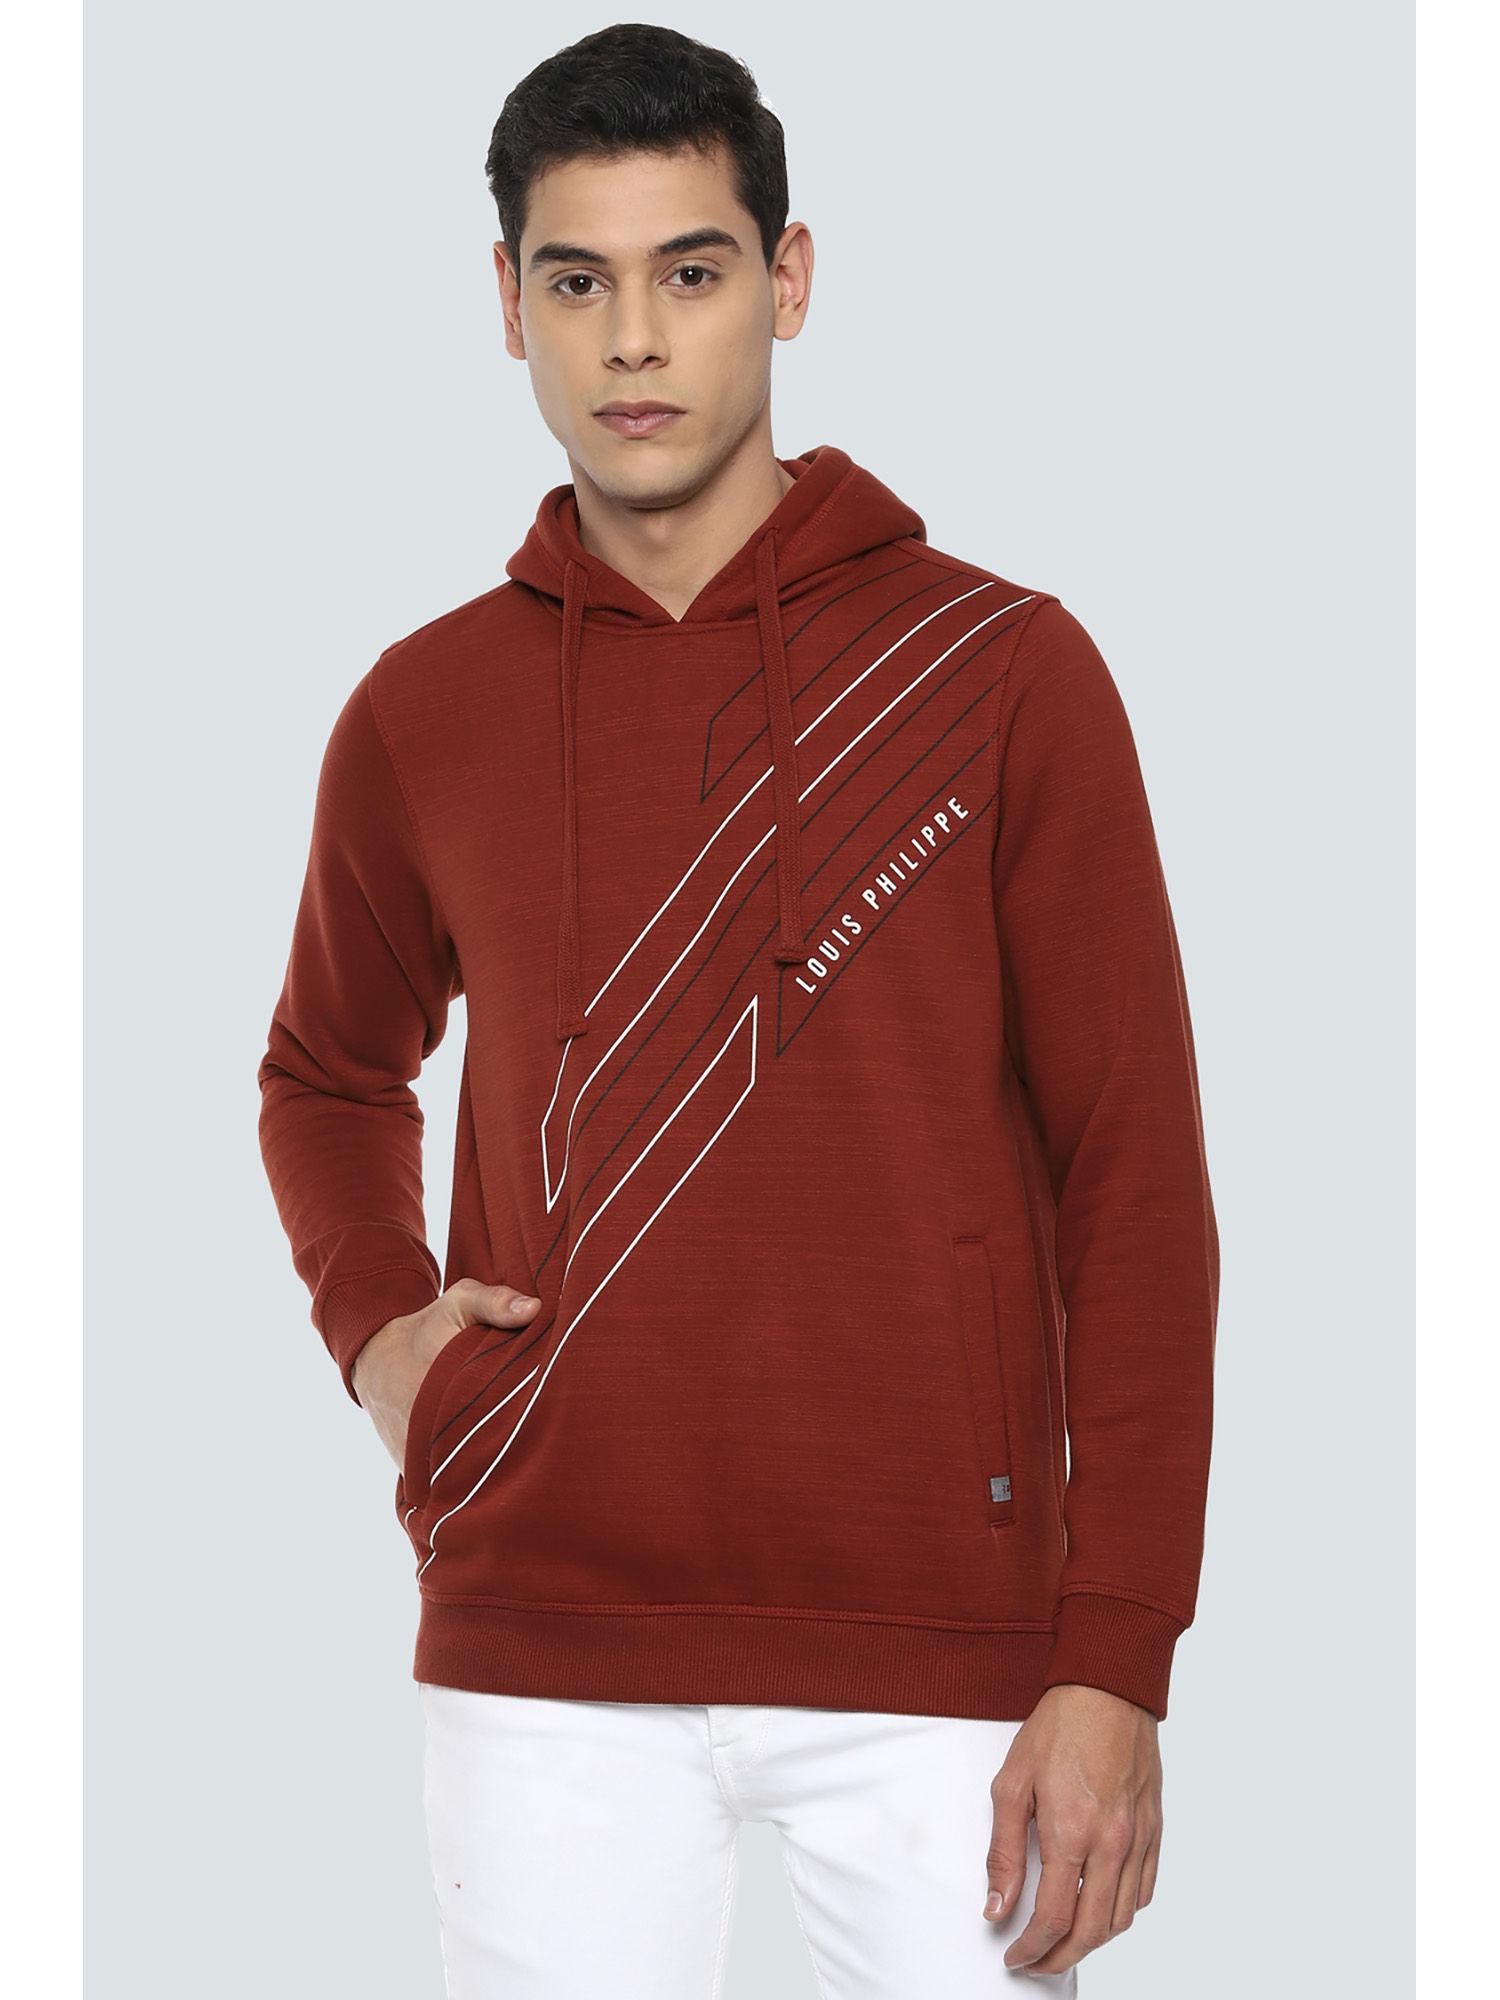 maroon sweatshirt